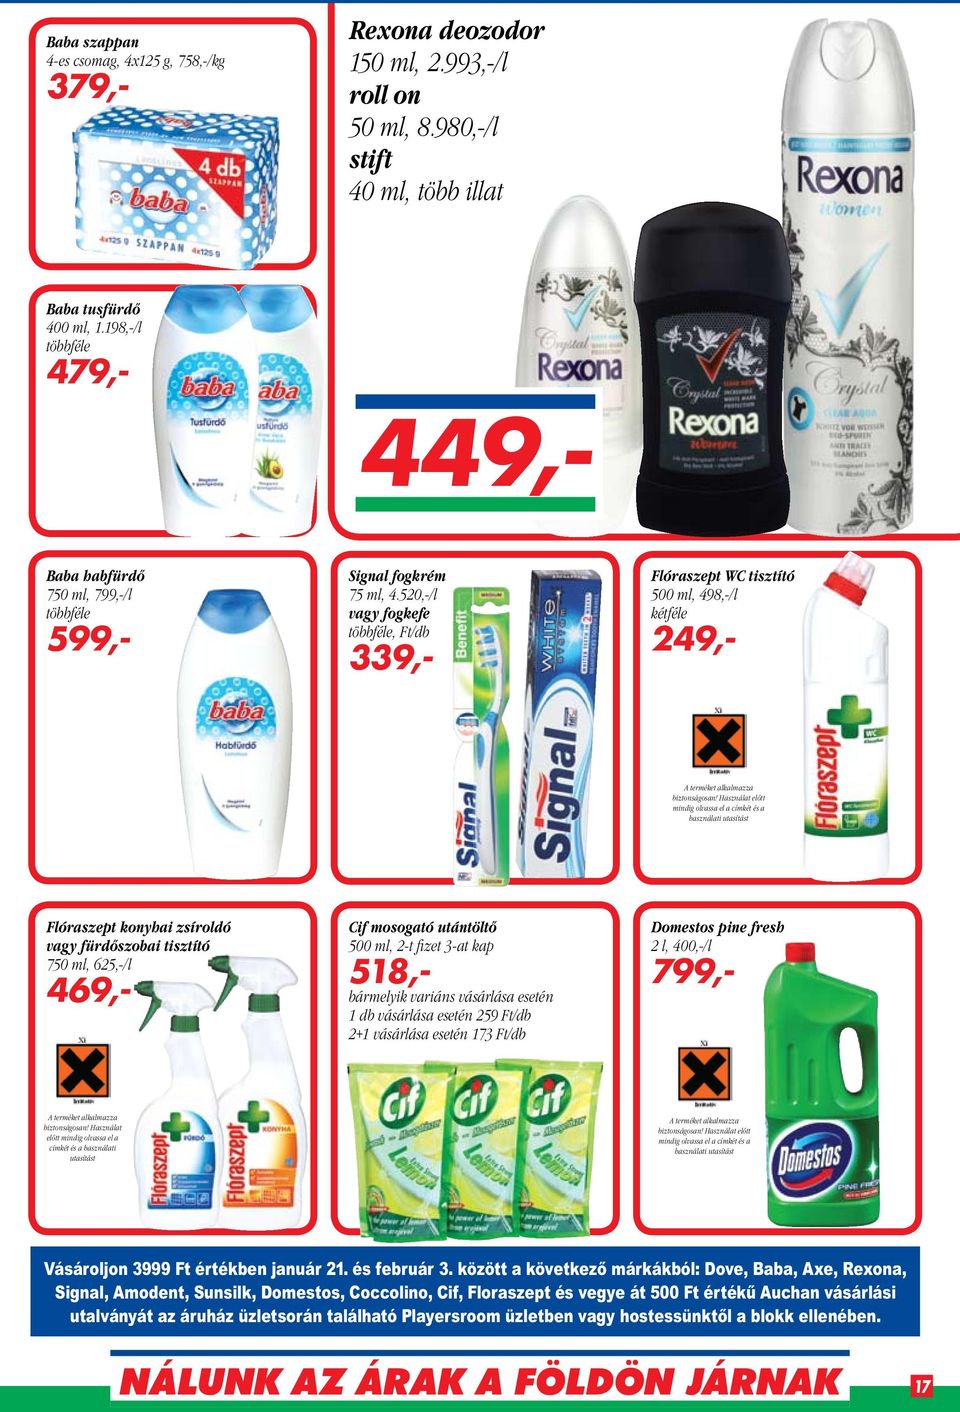 520,-/l vagy fogkefe többféle, Ft/db 339,- Flóraszept WC tisztító 500 ml, 498,-/l kétféle 249,- A terméket alkalmazza biztonságosan!